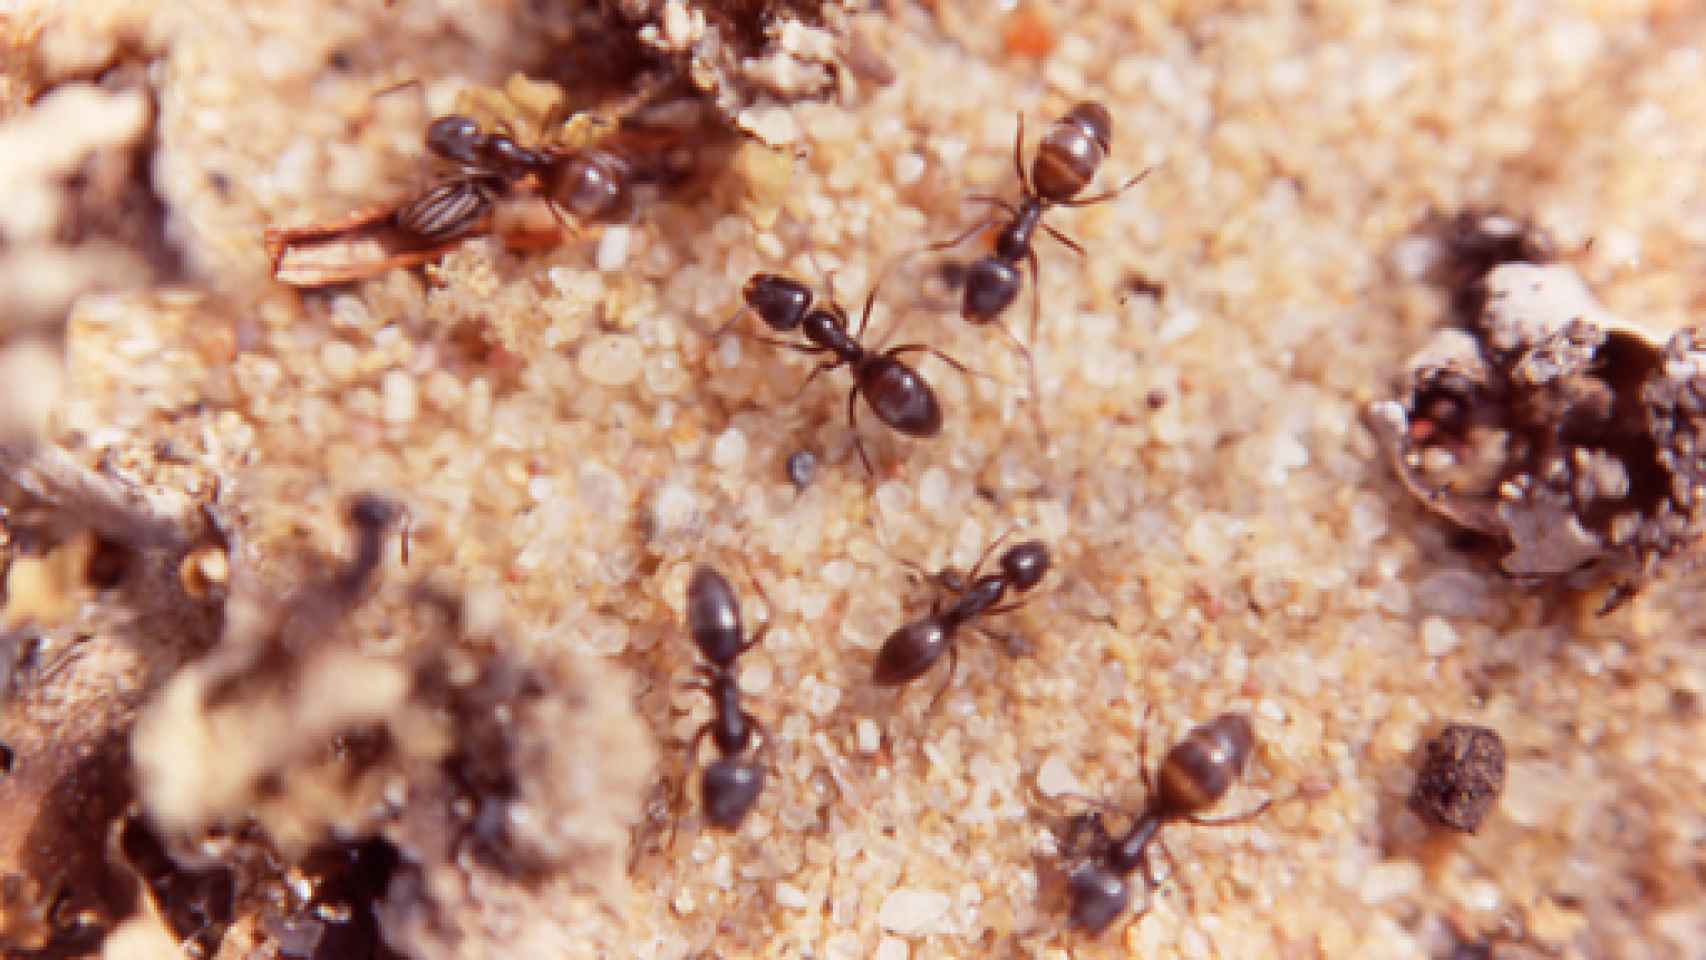 Image: Hormigas, las grandes supervivientes